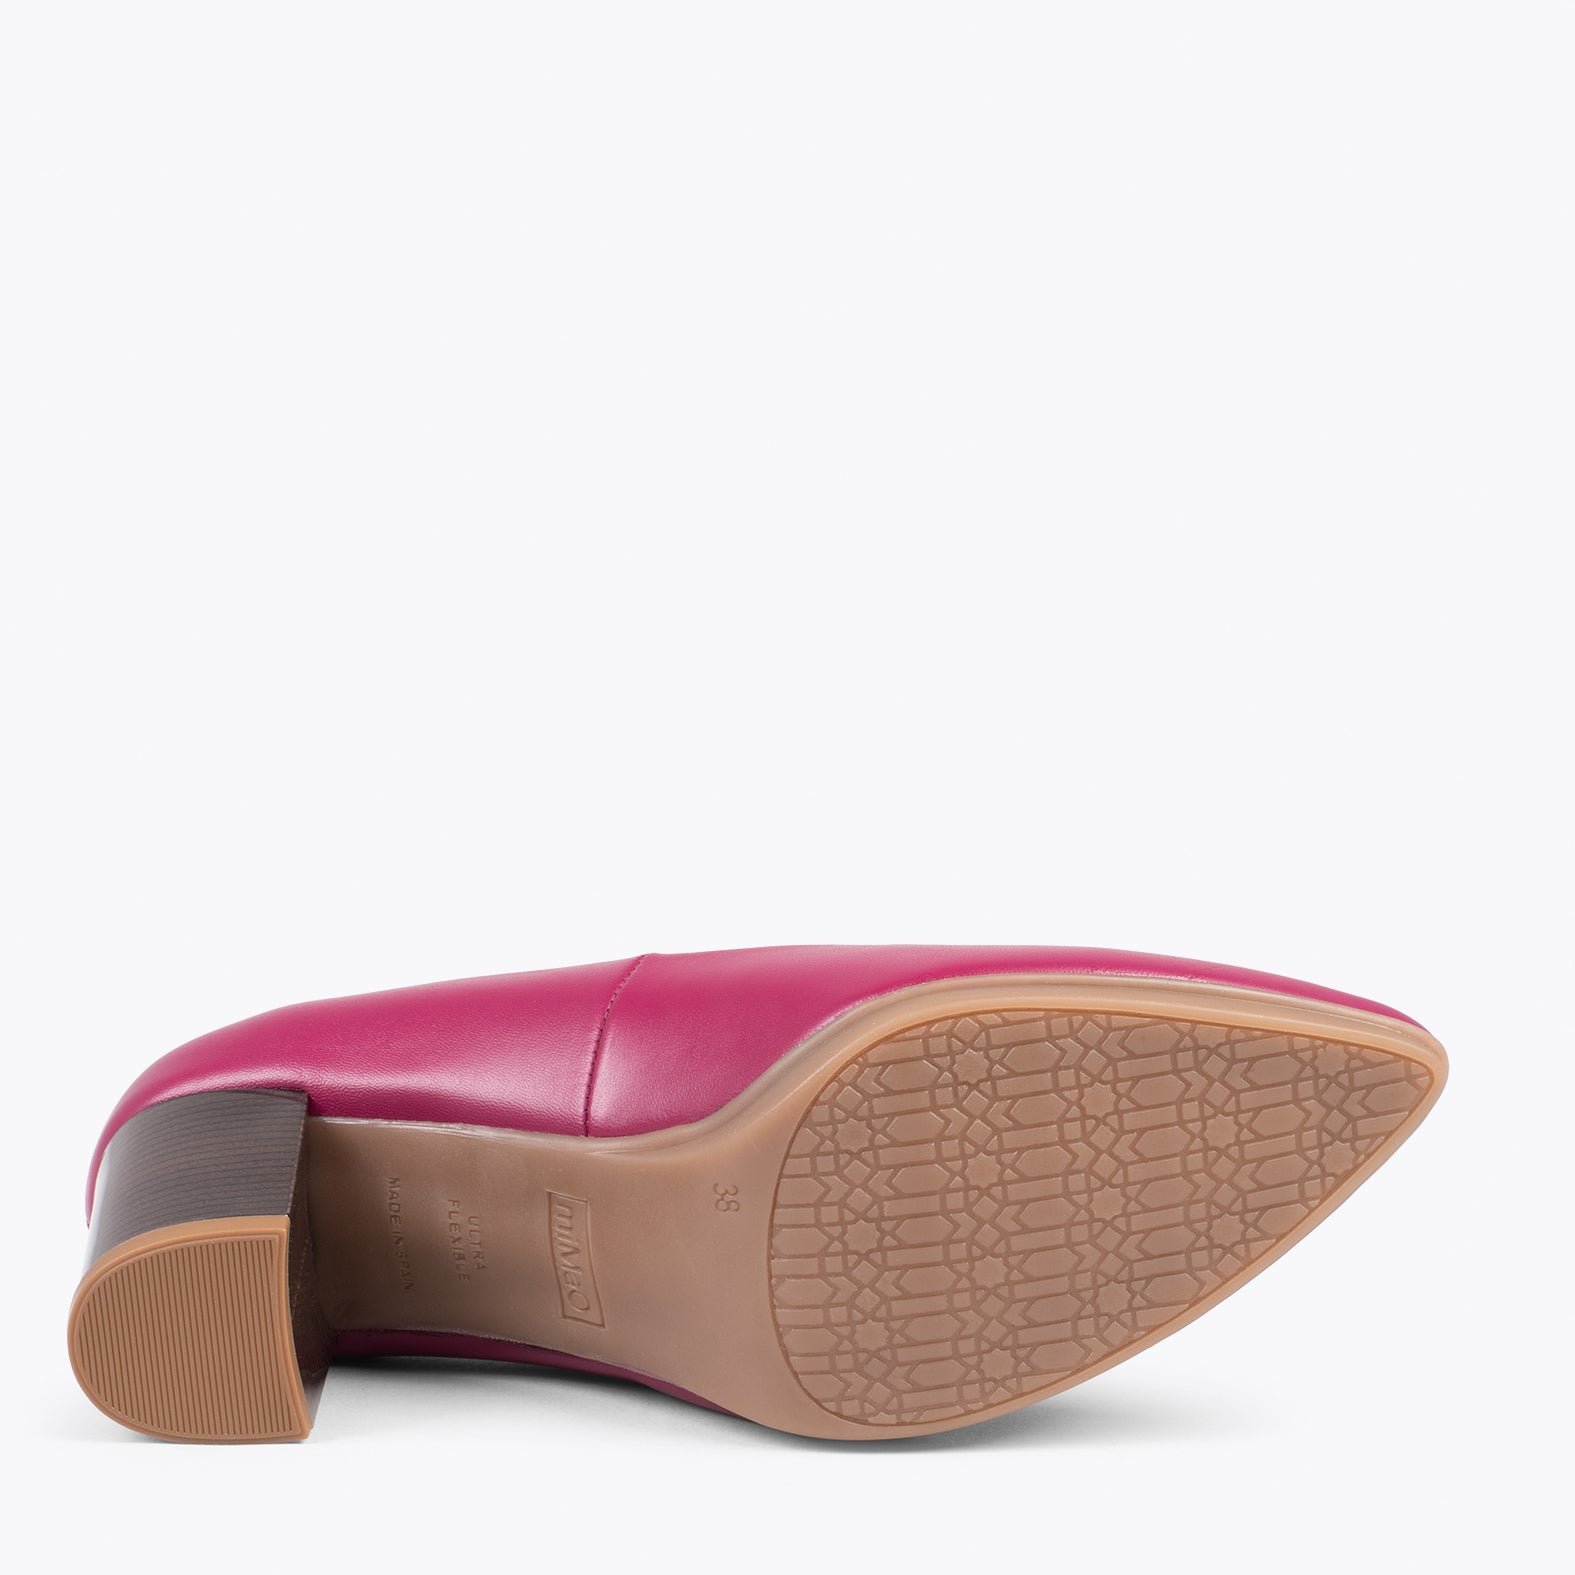 URBAN S SALON – Zapatos de tacón medio de napa BURDEOS